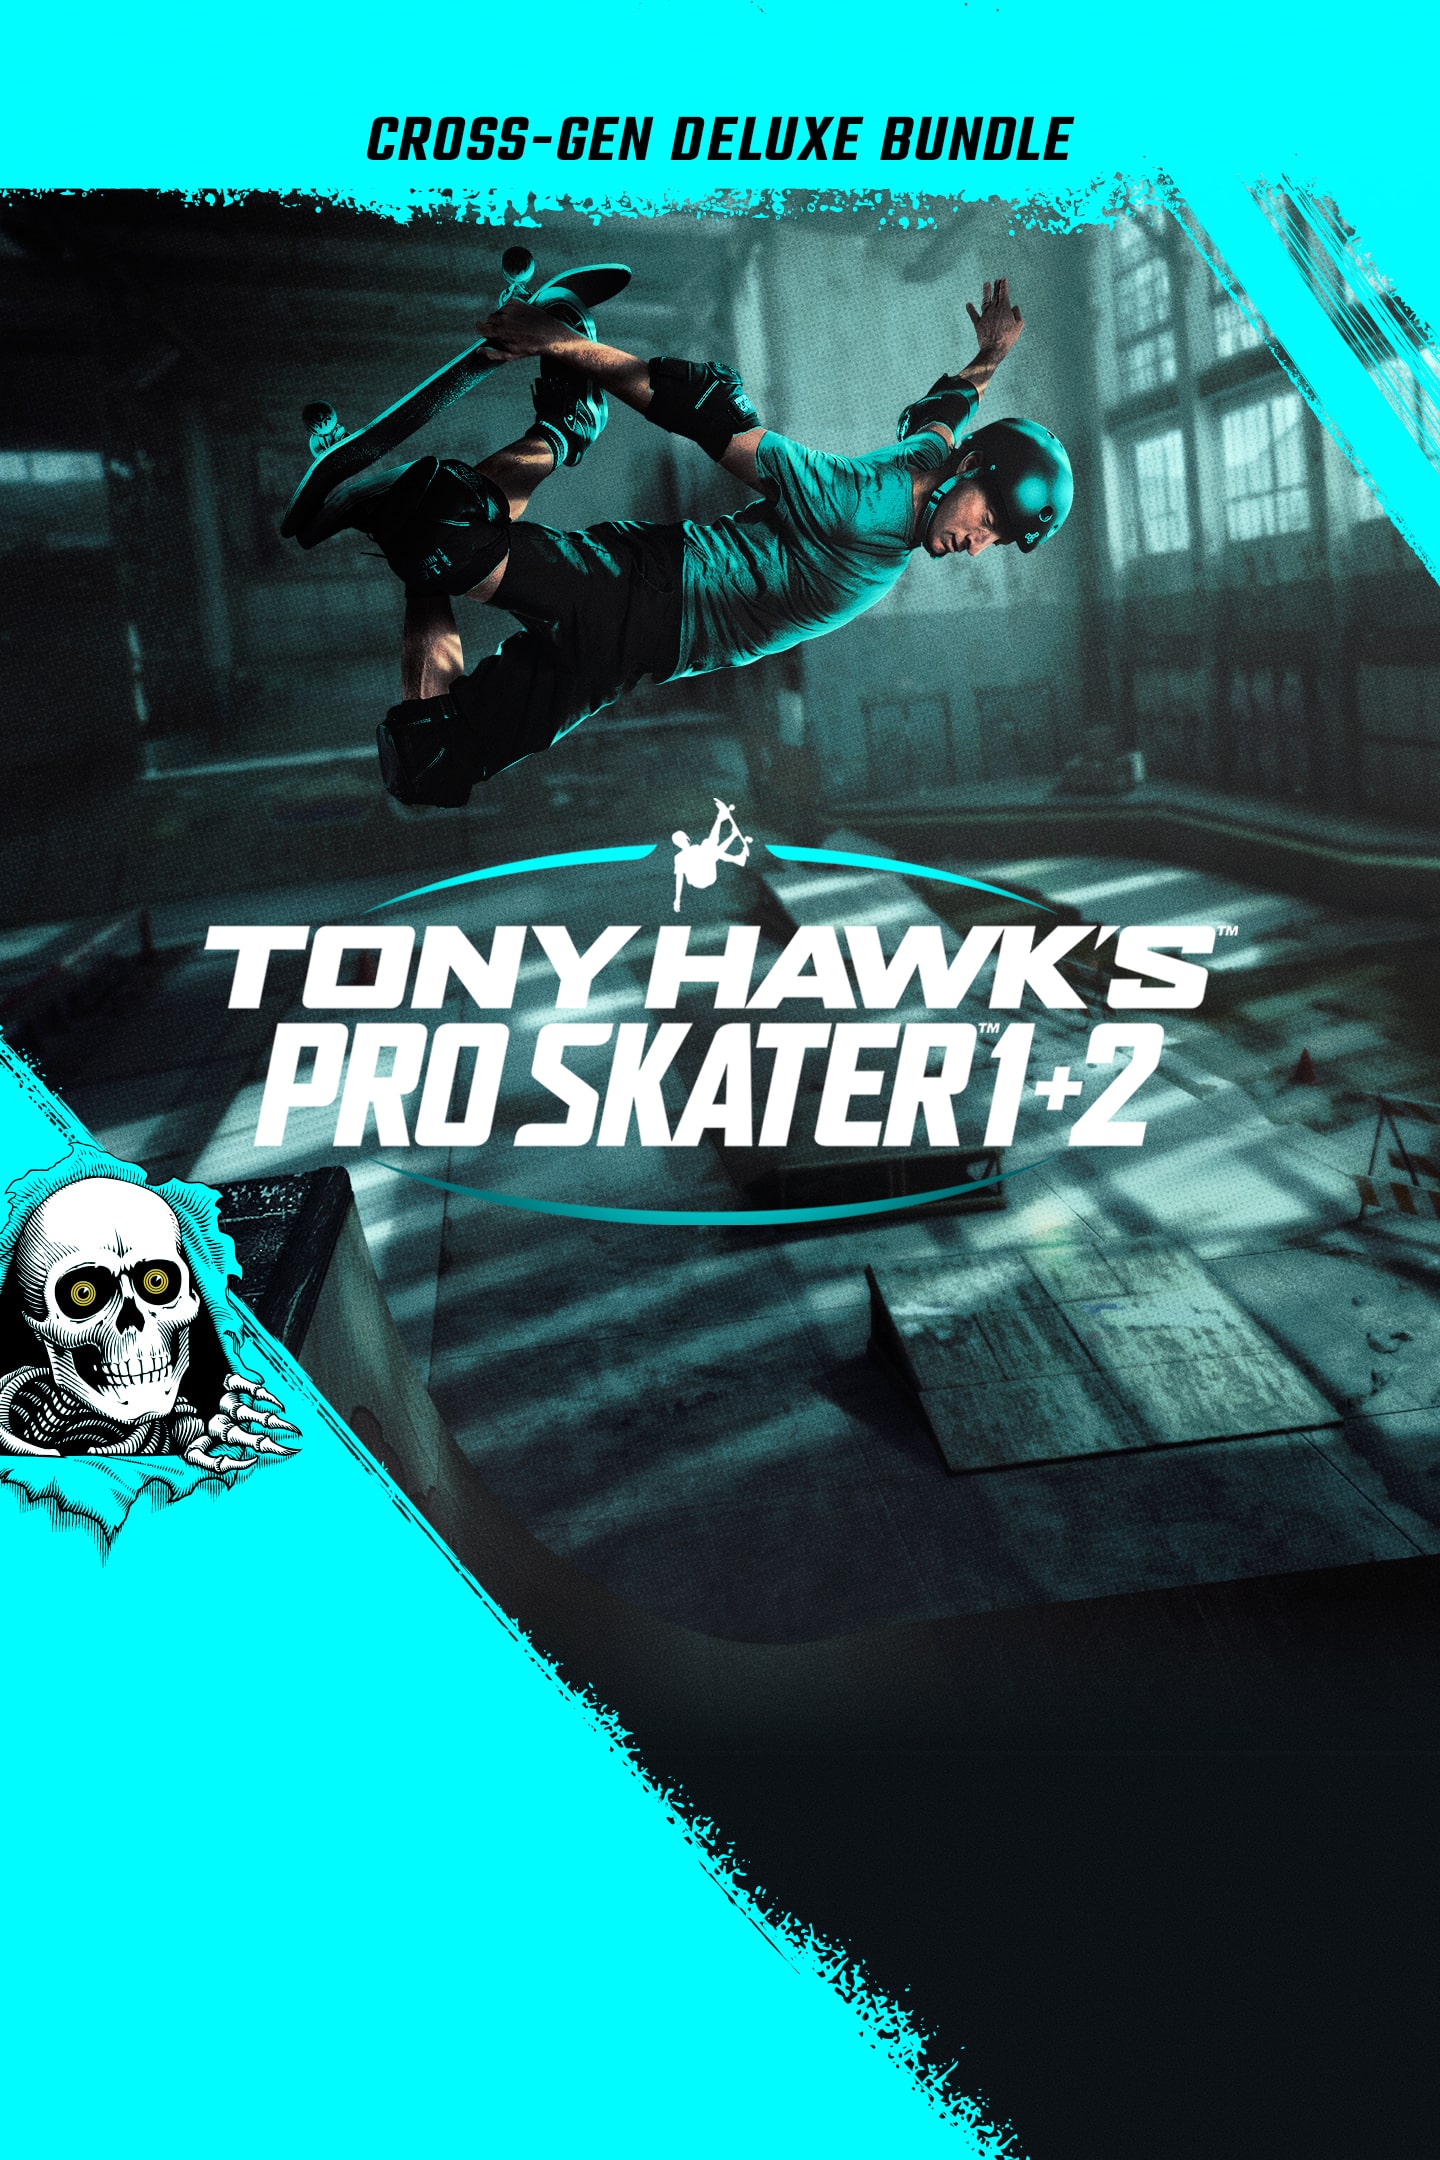 Tony Hawk's Pro Skater 1 + 2 - PlayStation 4